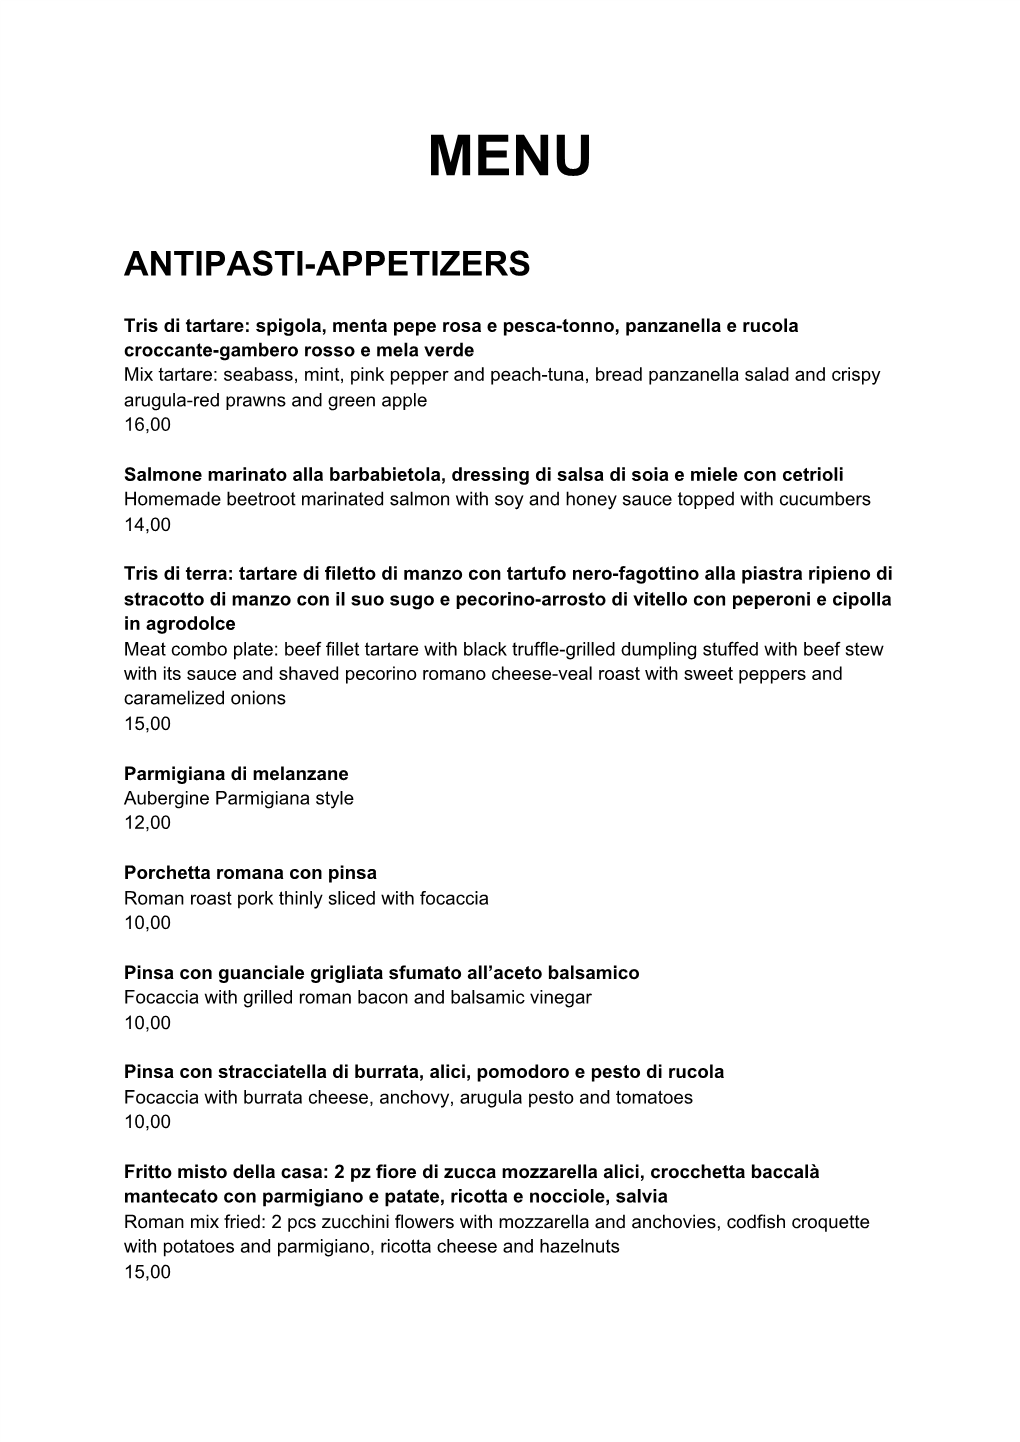 Antipasti-Appetizers